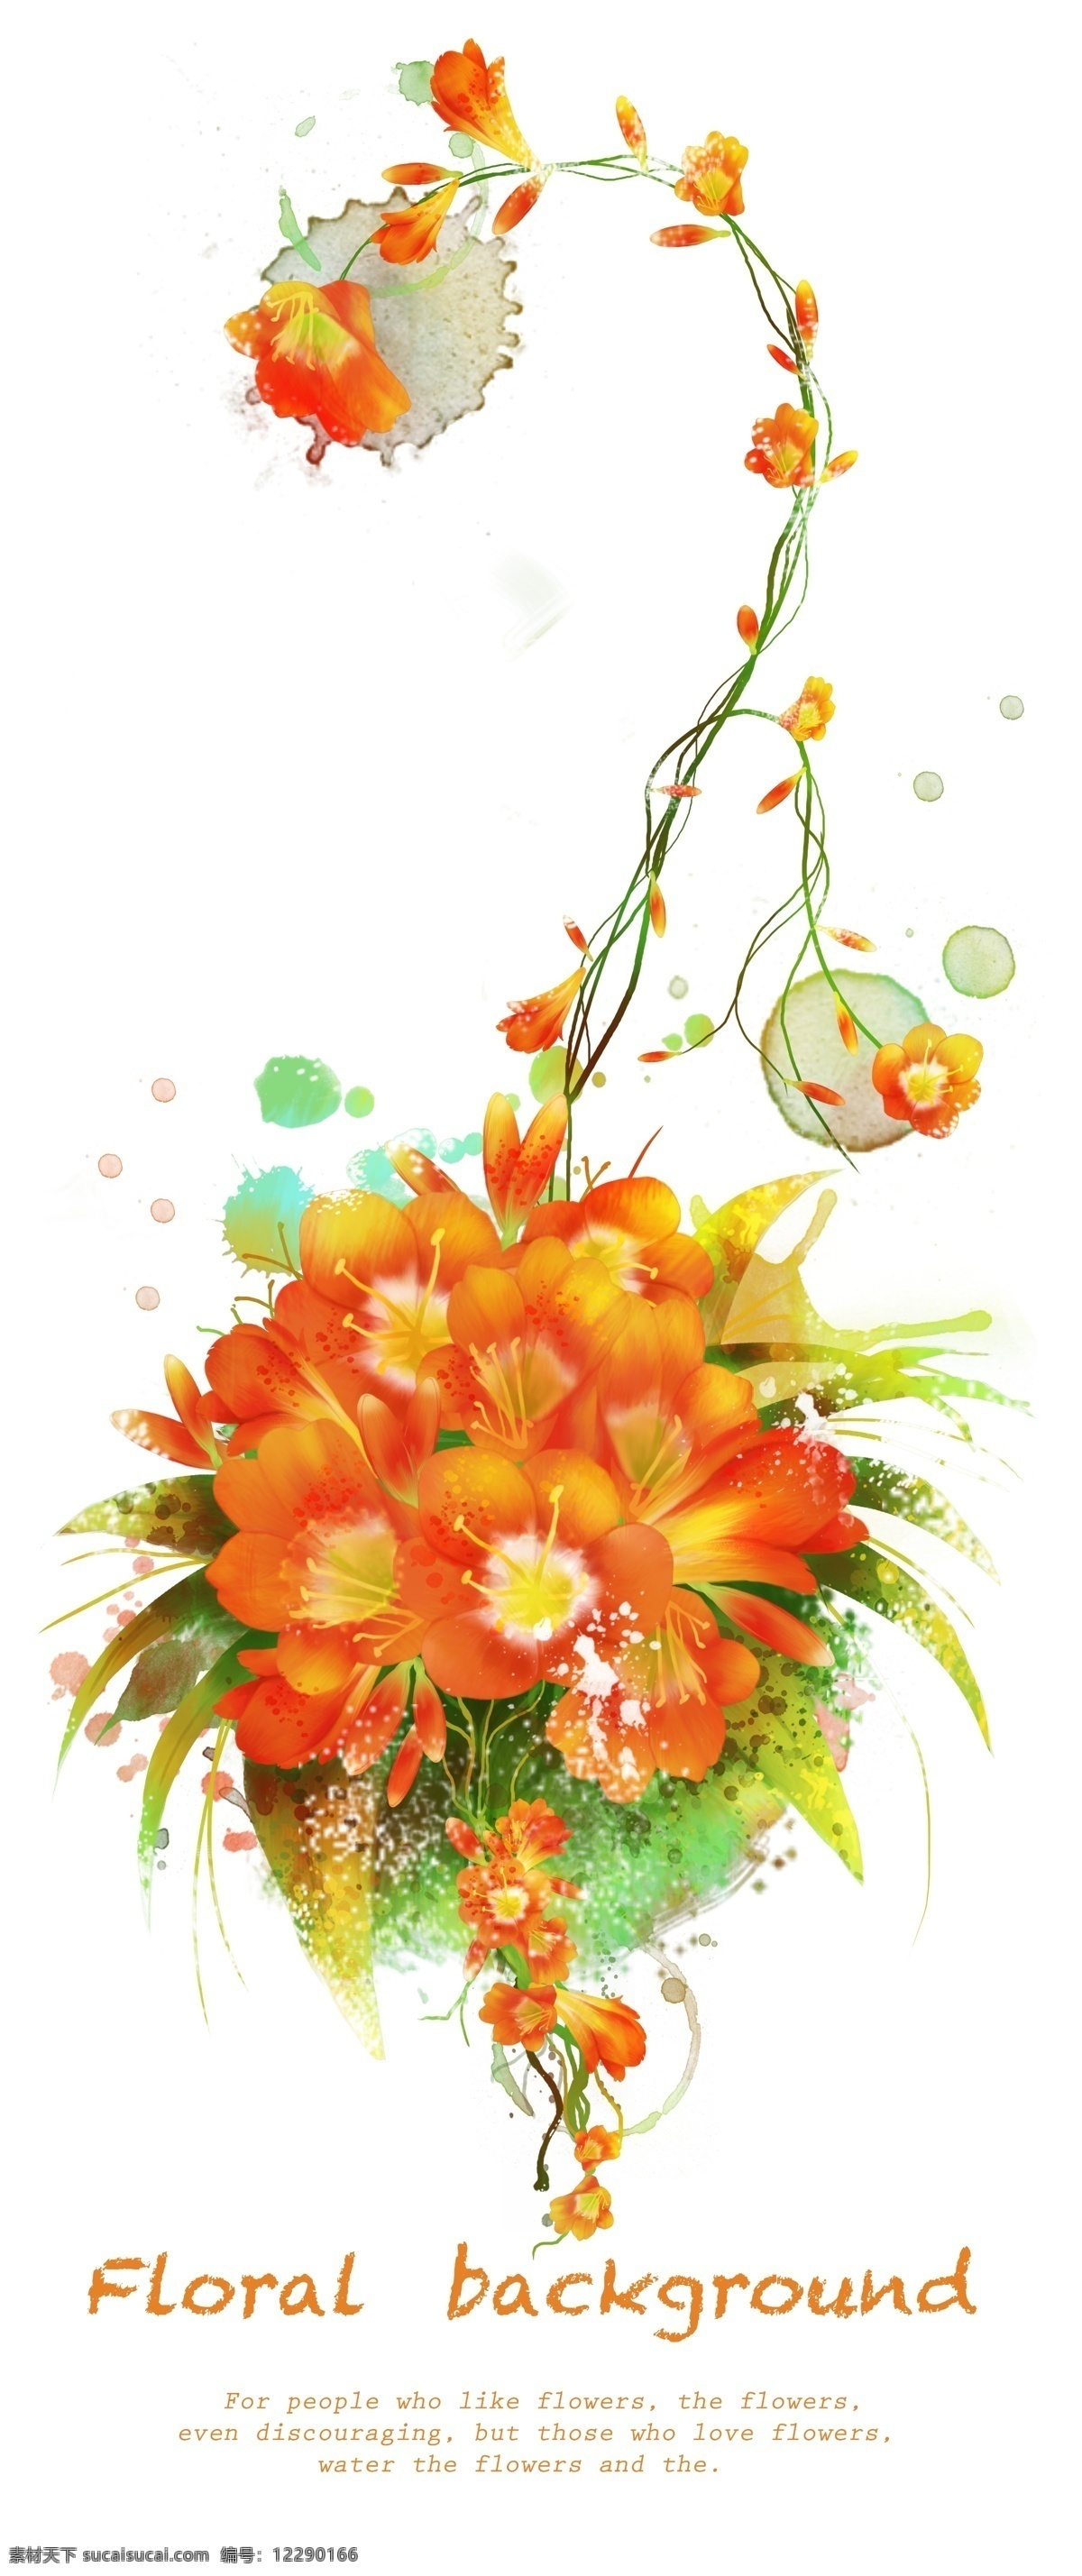 橘 色 花卉 装饰 背景 图 源文件 花卉装饰 装饰背景 藤蔓植物 精美花卉